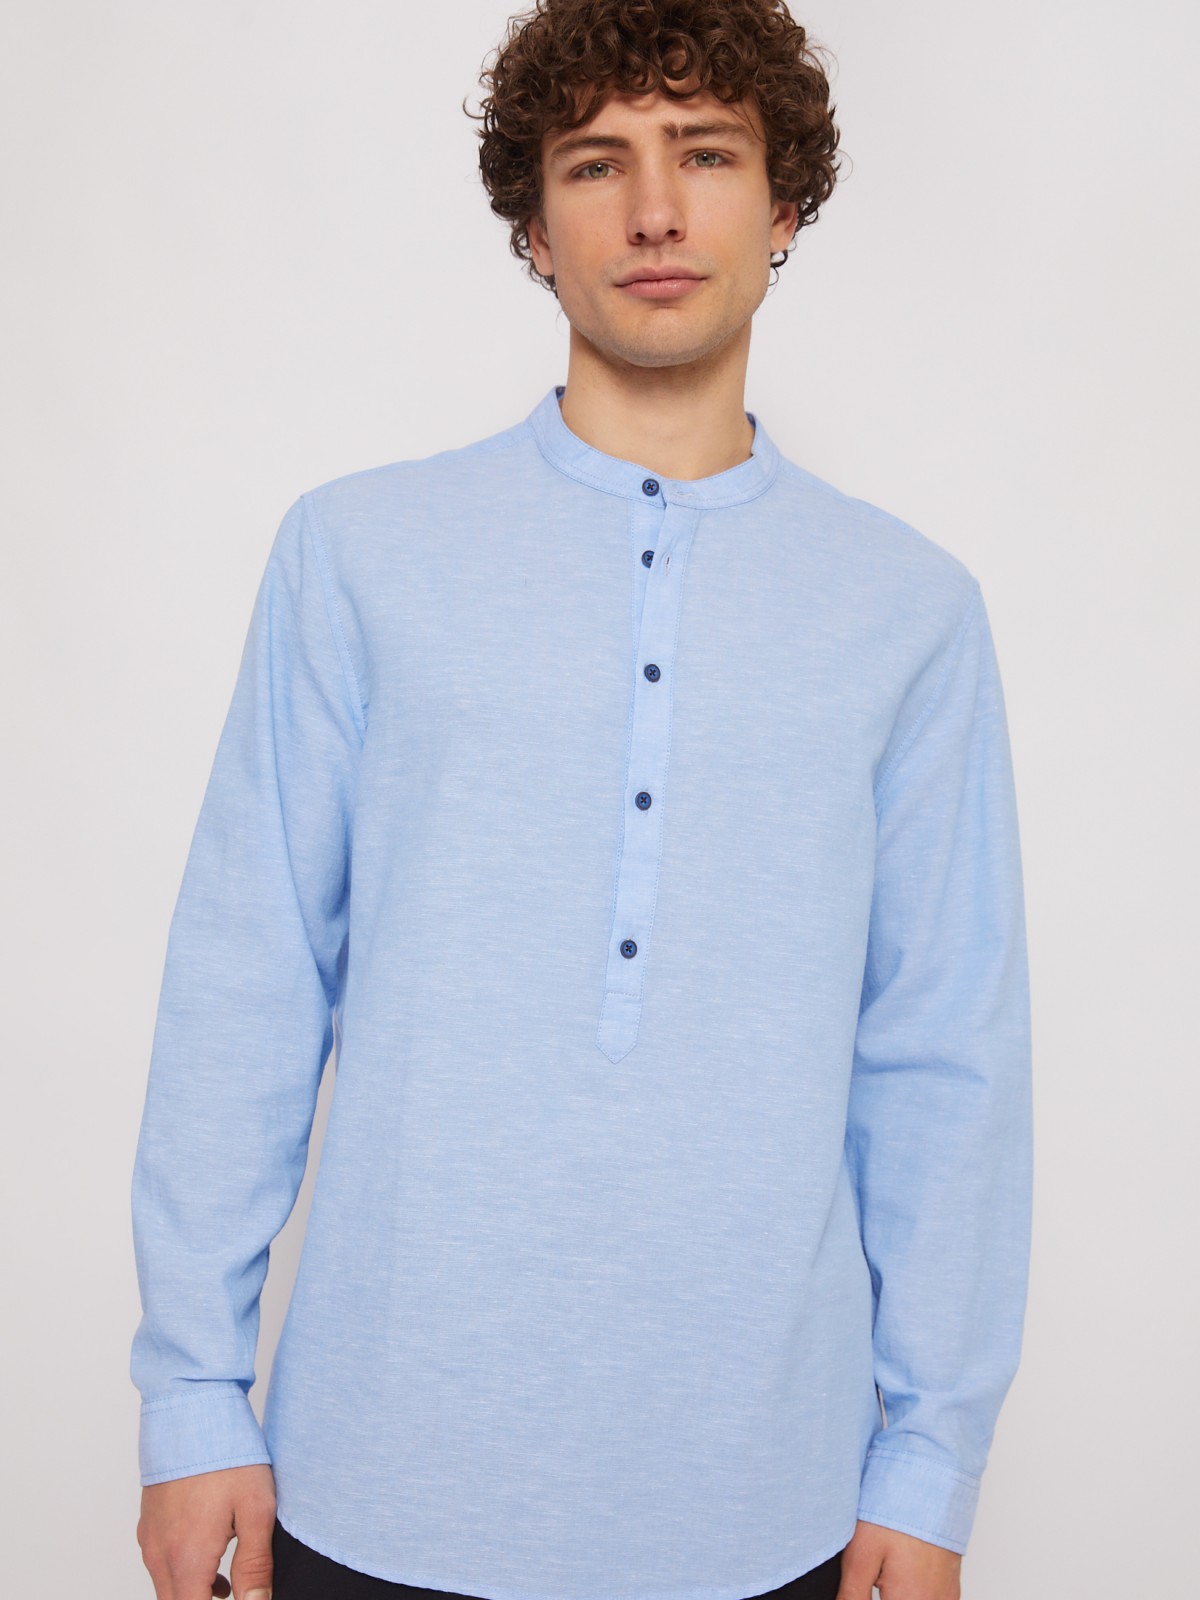 Льняная рубашка прямого силуэта zolla 014222162013, цвет светло-голубой, размер L - фото 3